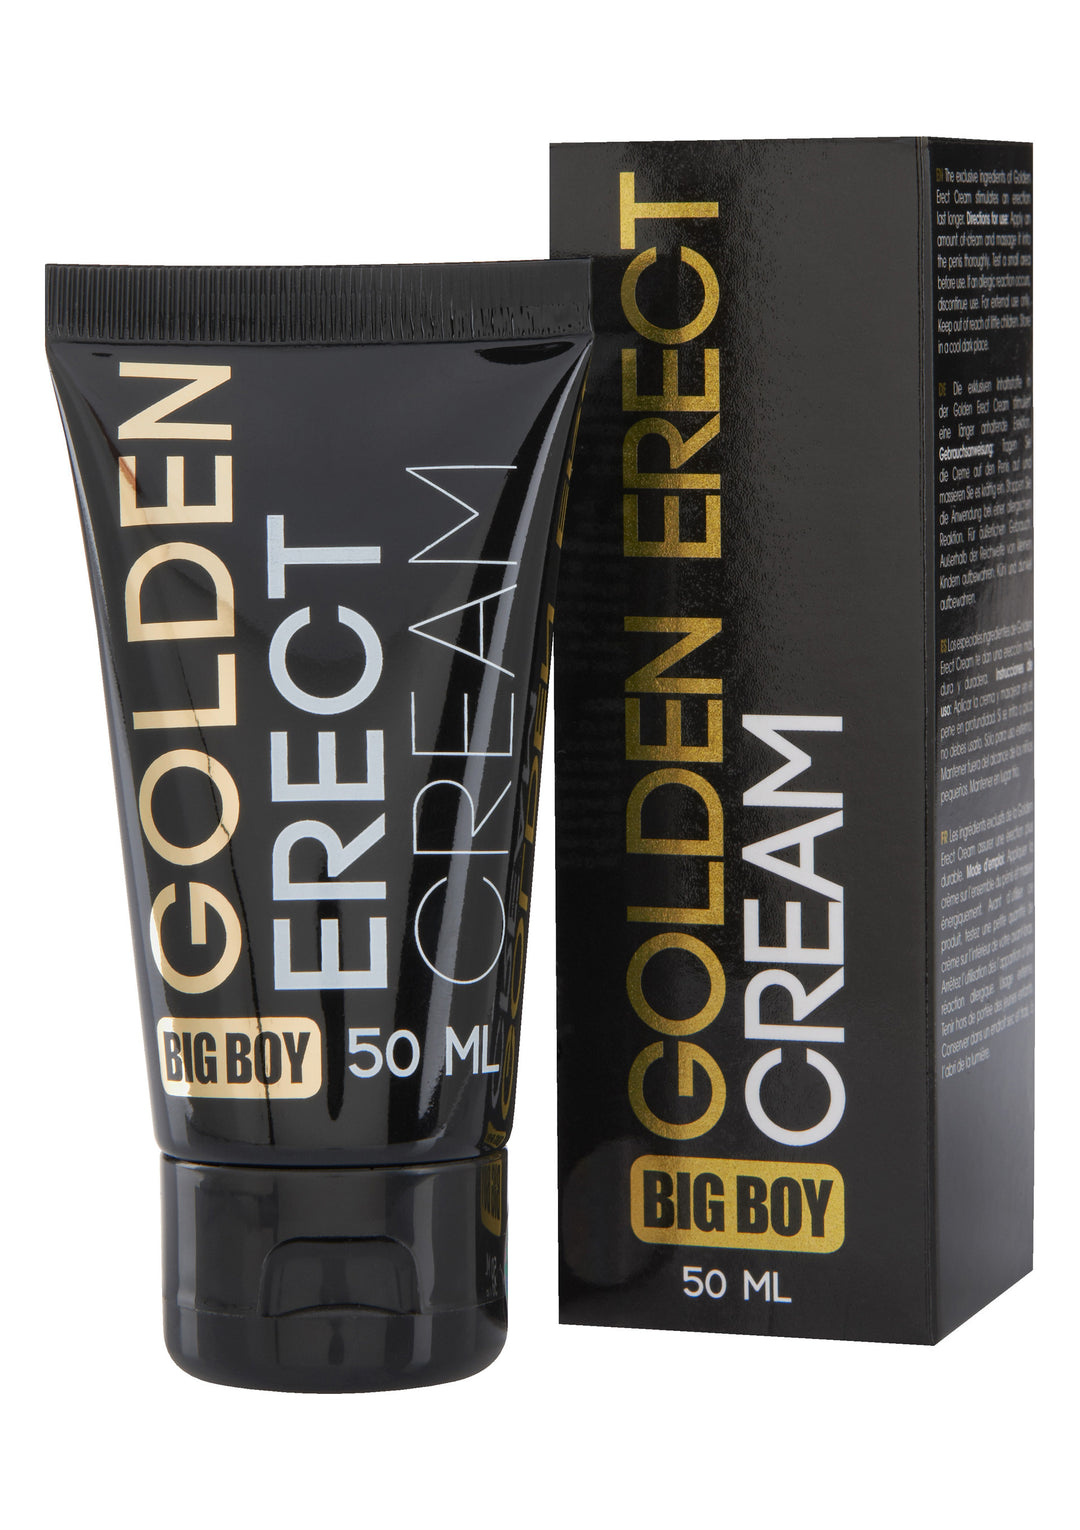 Big Boy Golden Erect Cream50ml best erection cream